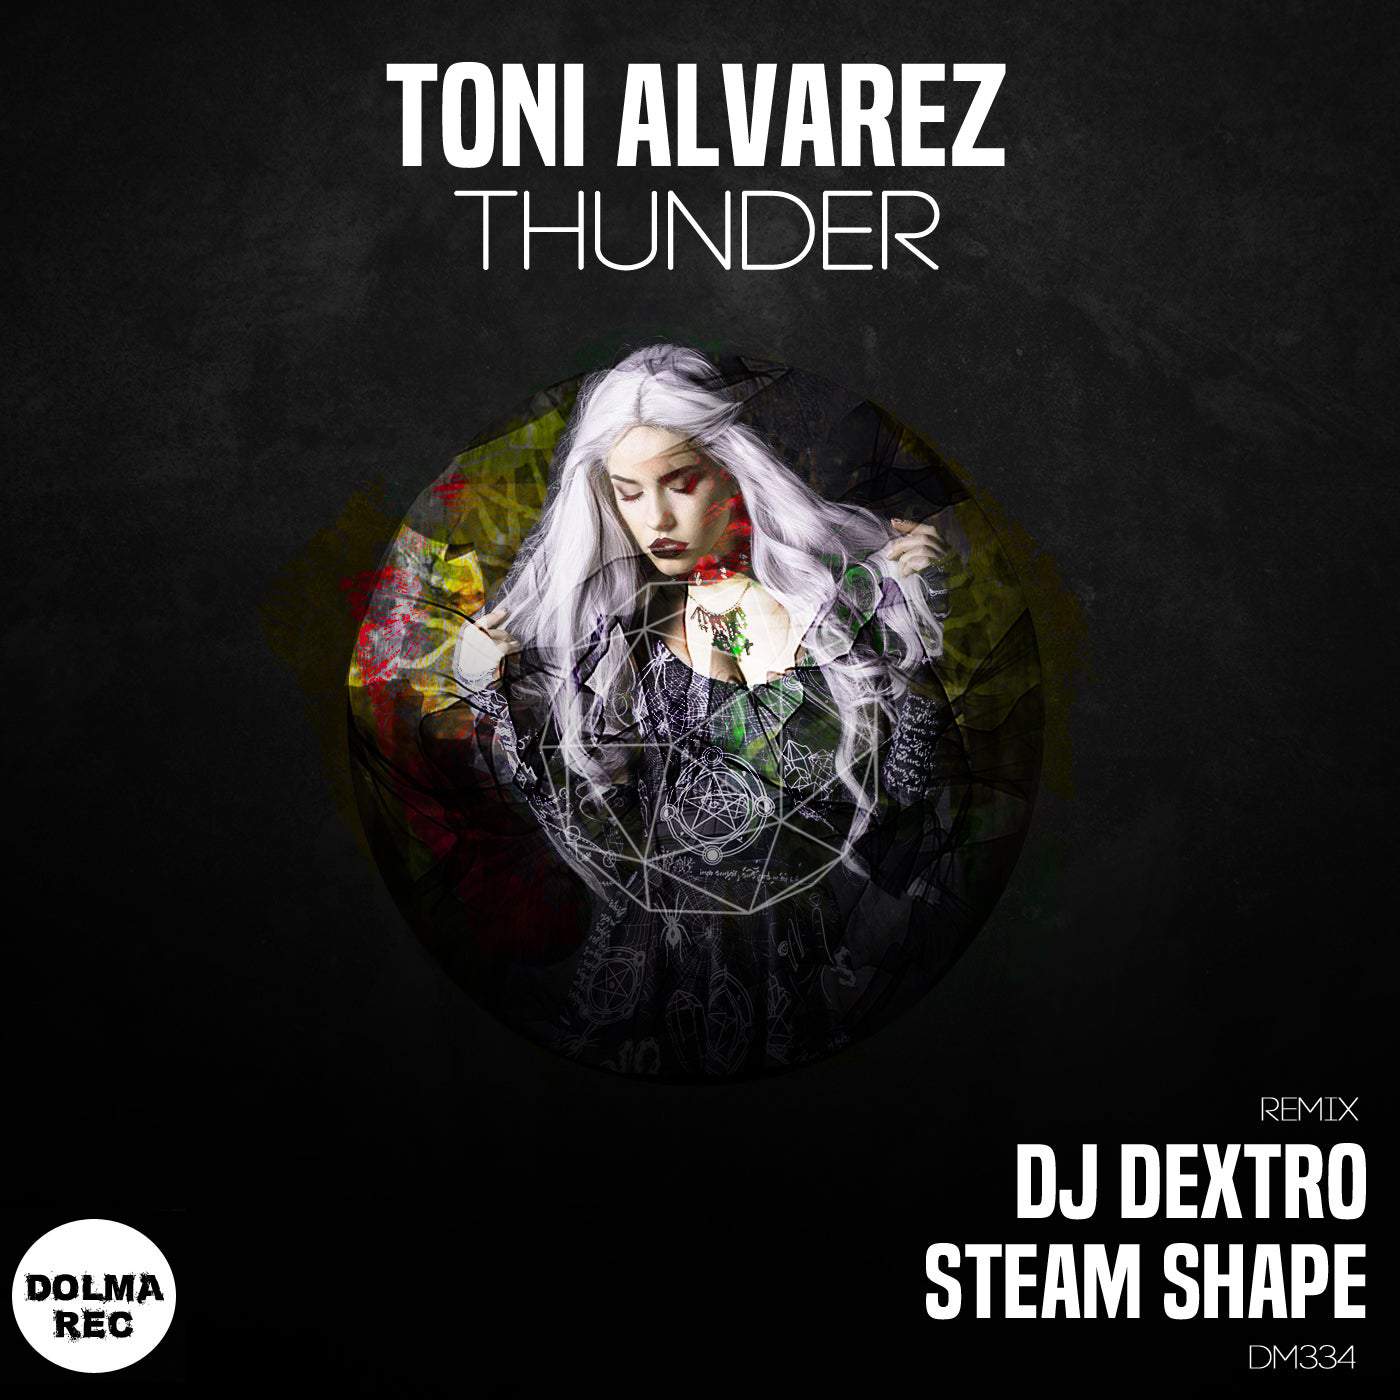 image cover: Toni Alvarez - Thunder / DM334